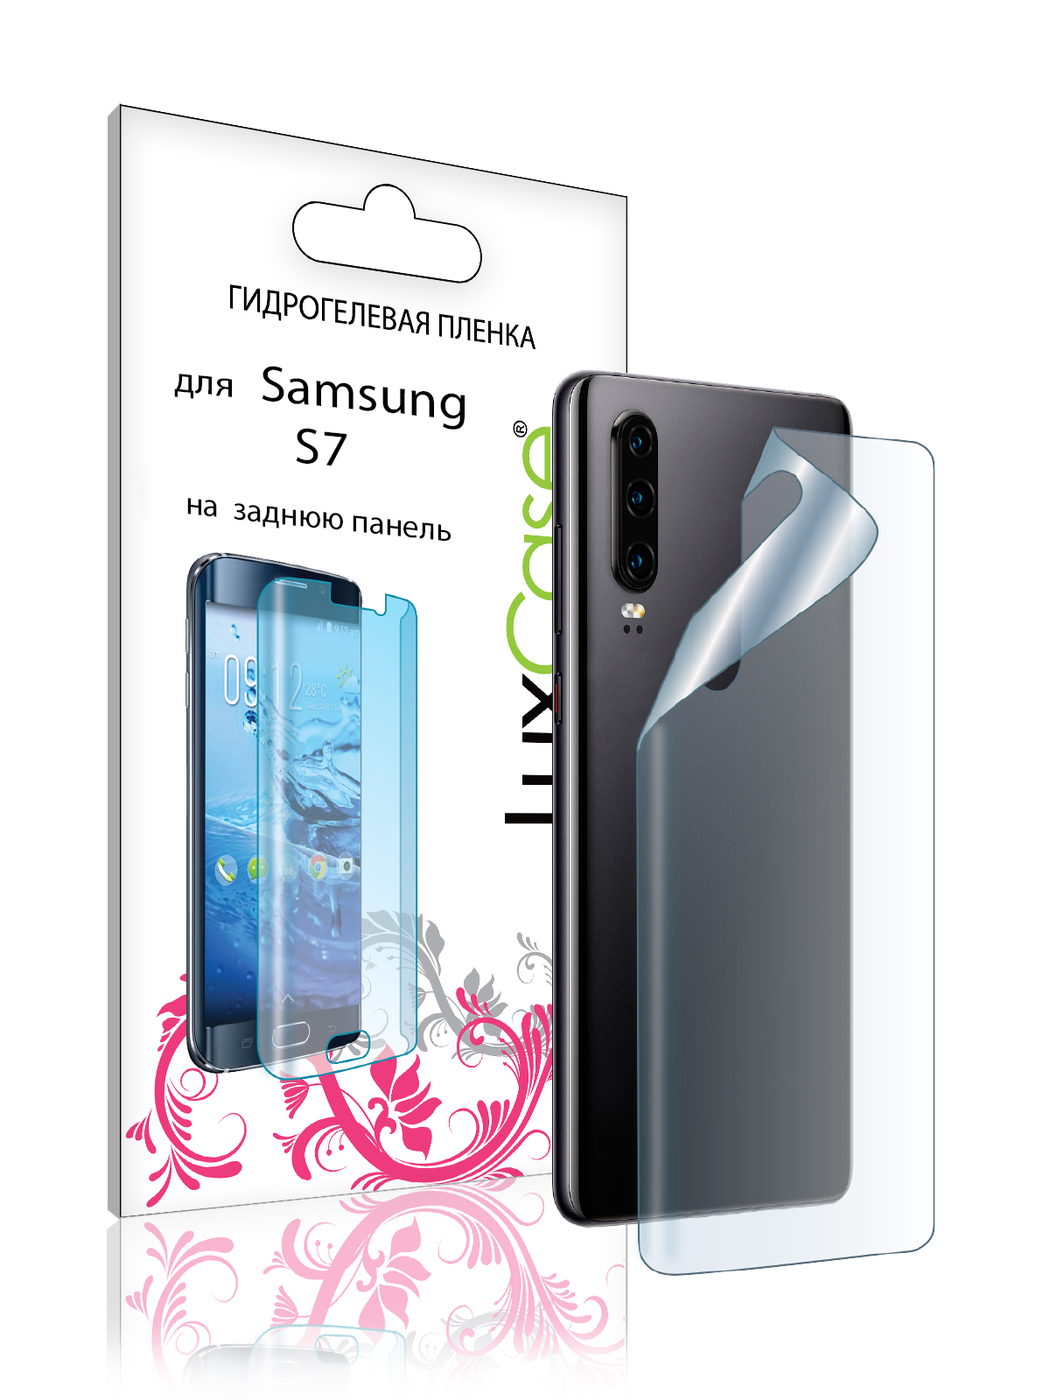 Пленка на заднюю панель LuxCase для Samsung Galaxy S7 0.14mm Transparent 86071 пленка на заднюю панель luxcase для samsung galaxy s7 0 14mm transparent 86071